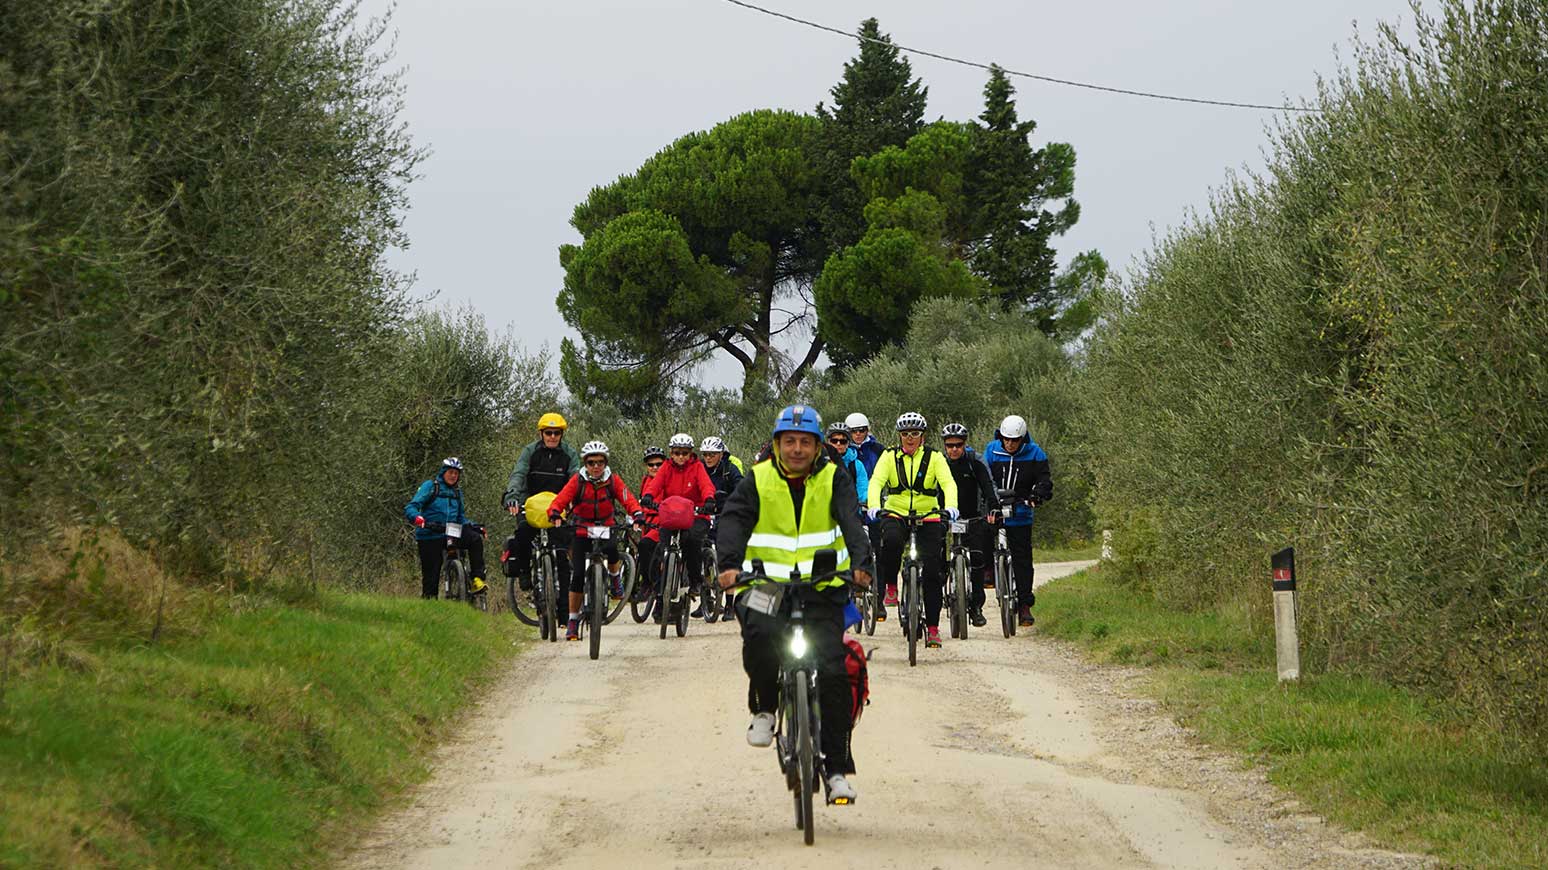 Toskana Radreise: Deutschsprachige Guides führen die Gruppen an - 2018 ist auch der Chefredakteur dabei.